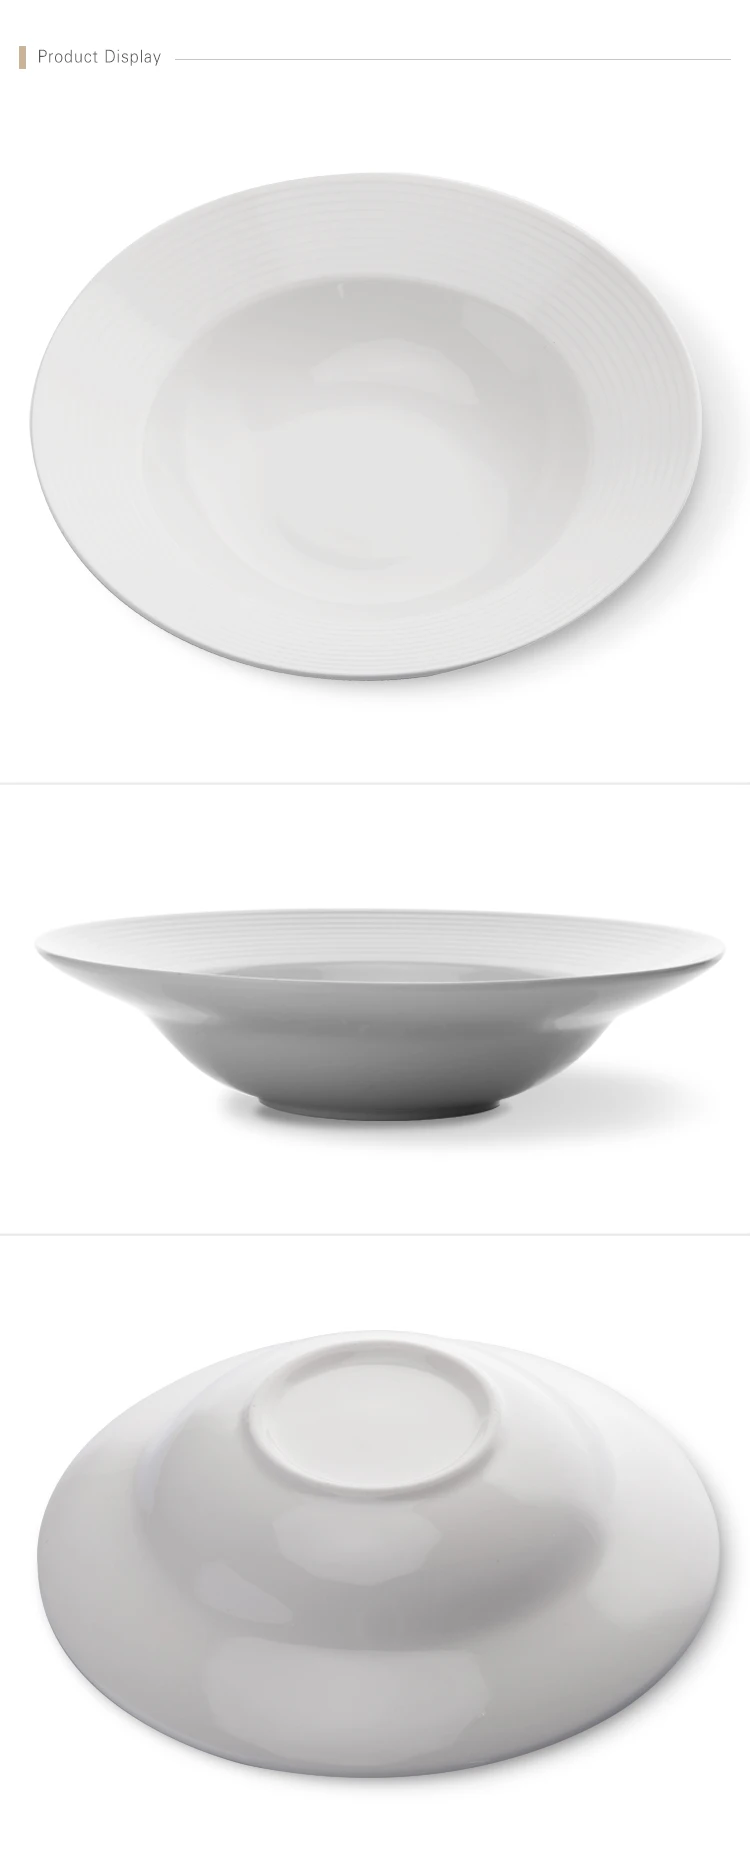 Five Star Hotel Restaurant Porcelain Deep Salad Bowl, Porcelain Tableware Bulk Supply Porcelain Restaurant Deep Plate